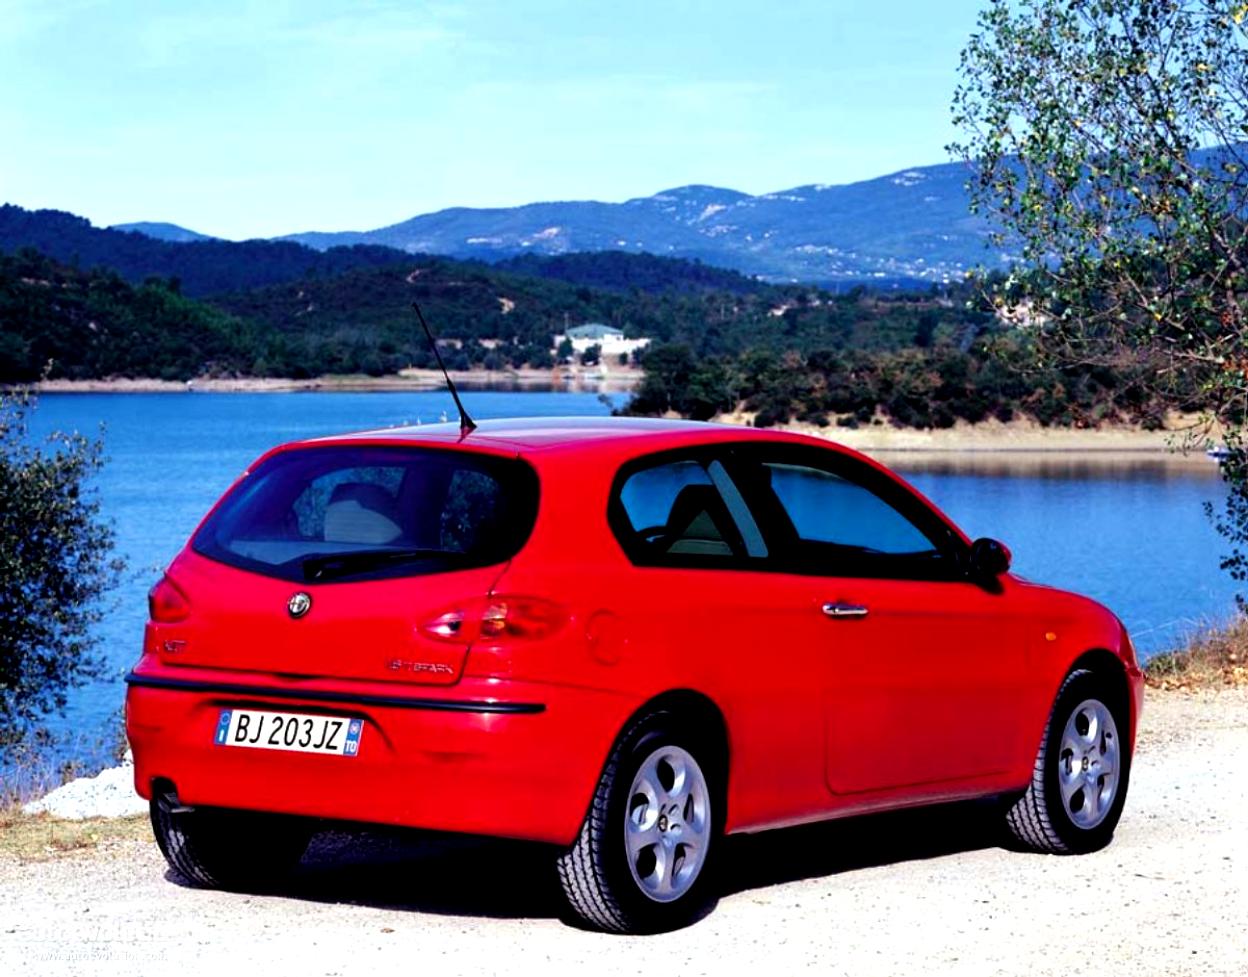 Alfa Romeo 147 3 Doors 2000 #14